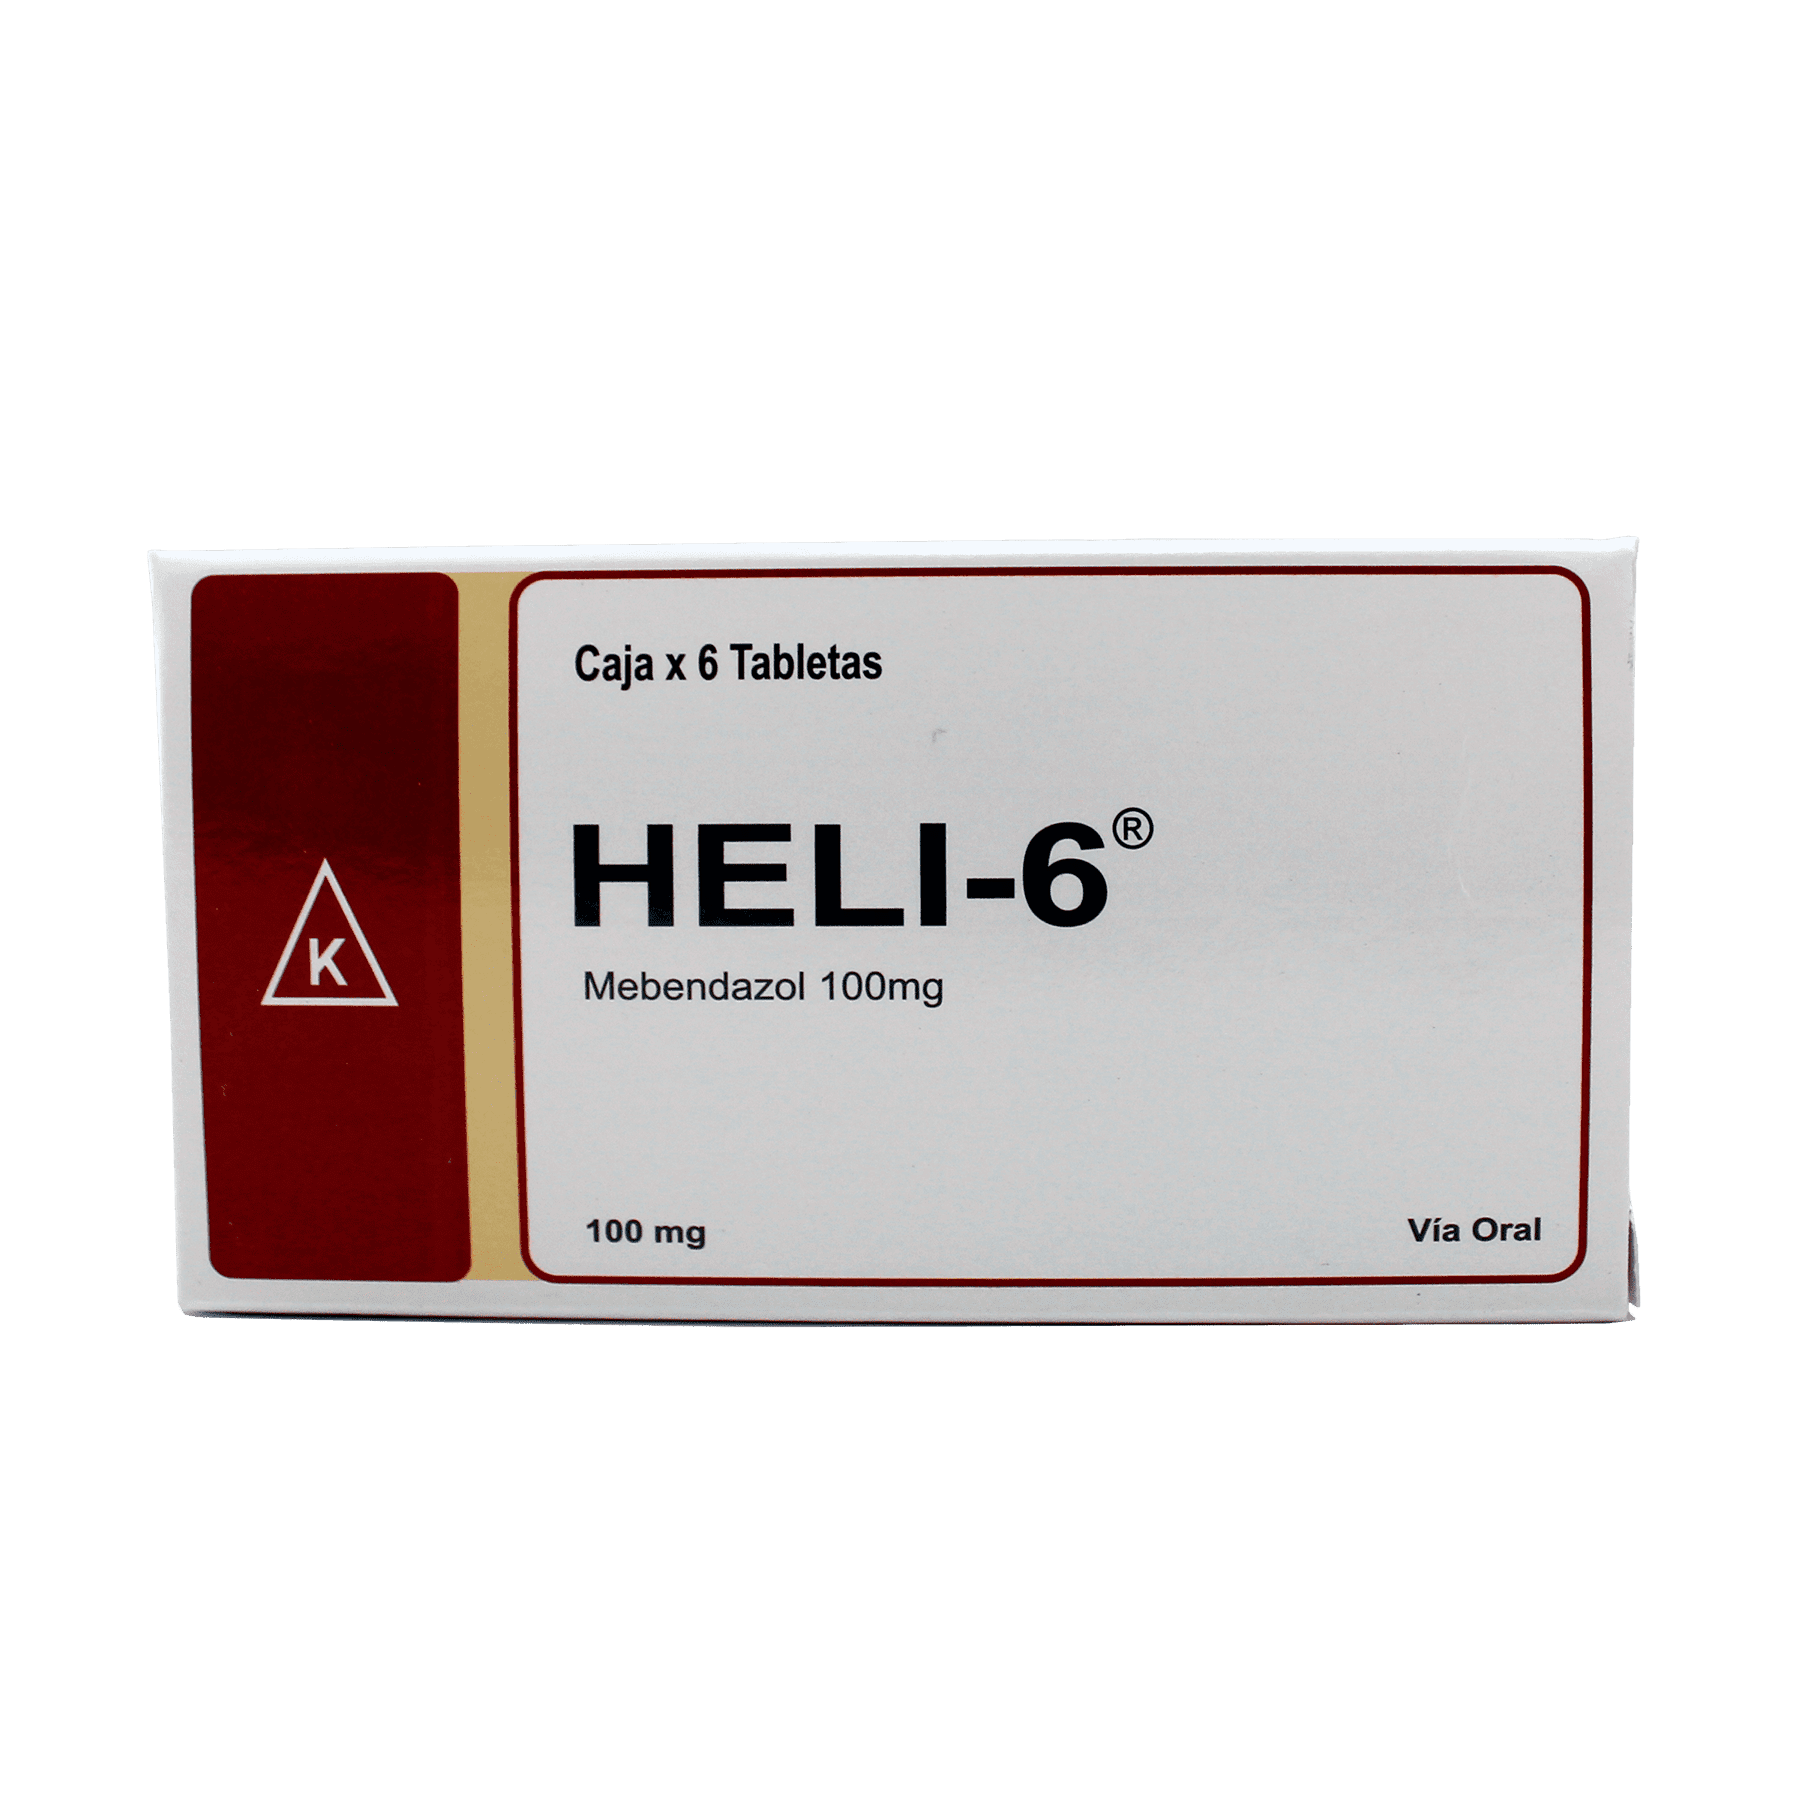 heli-6-tabletas-laboratorios-karnel